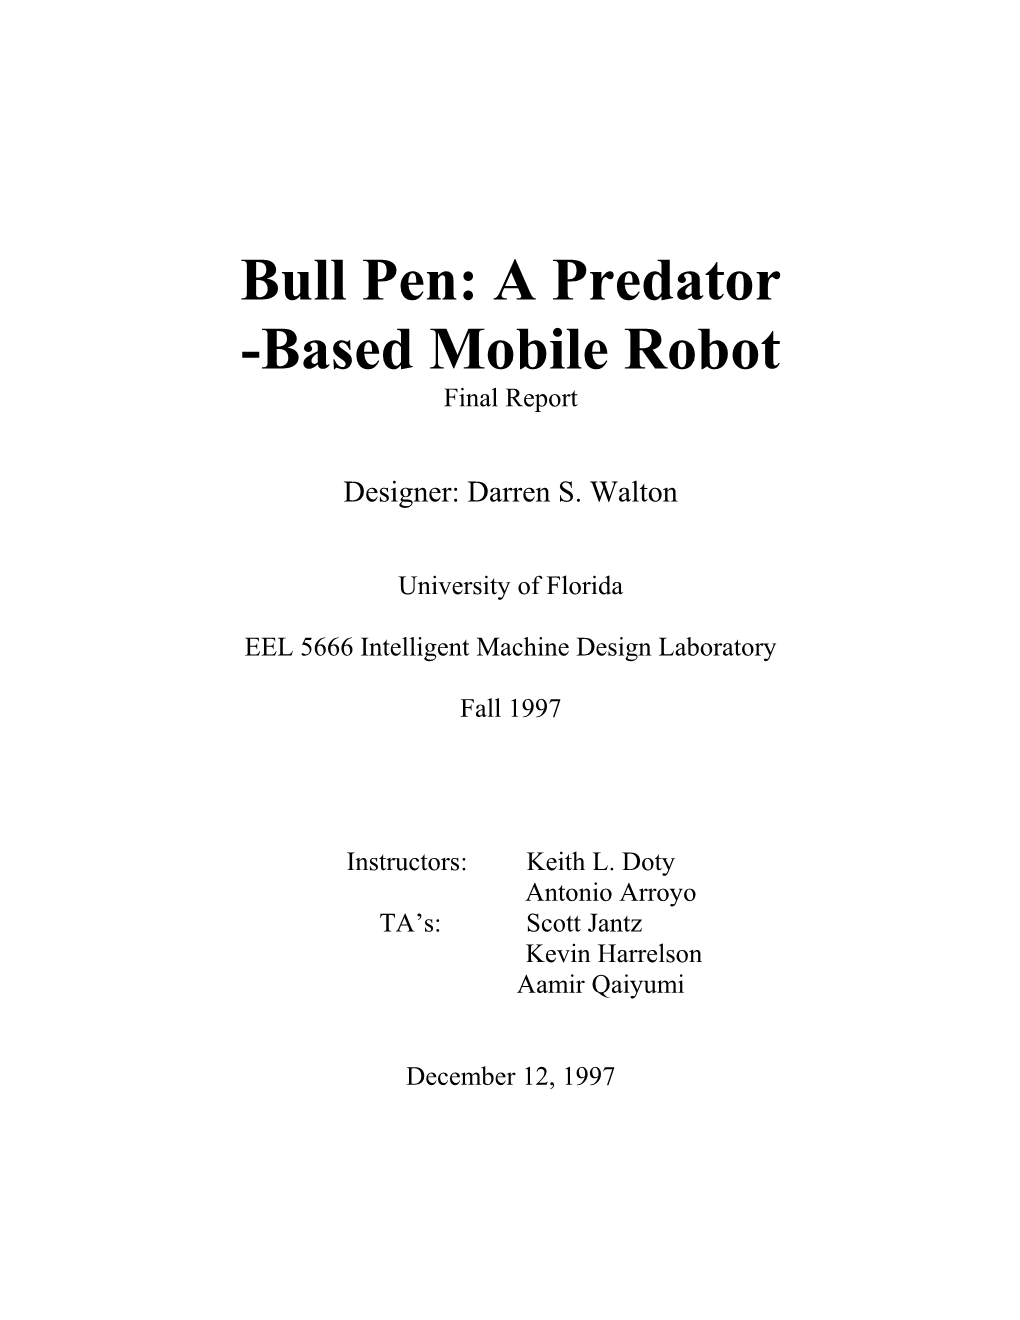 Bull Pen: a Predator -Based Mobile Robot